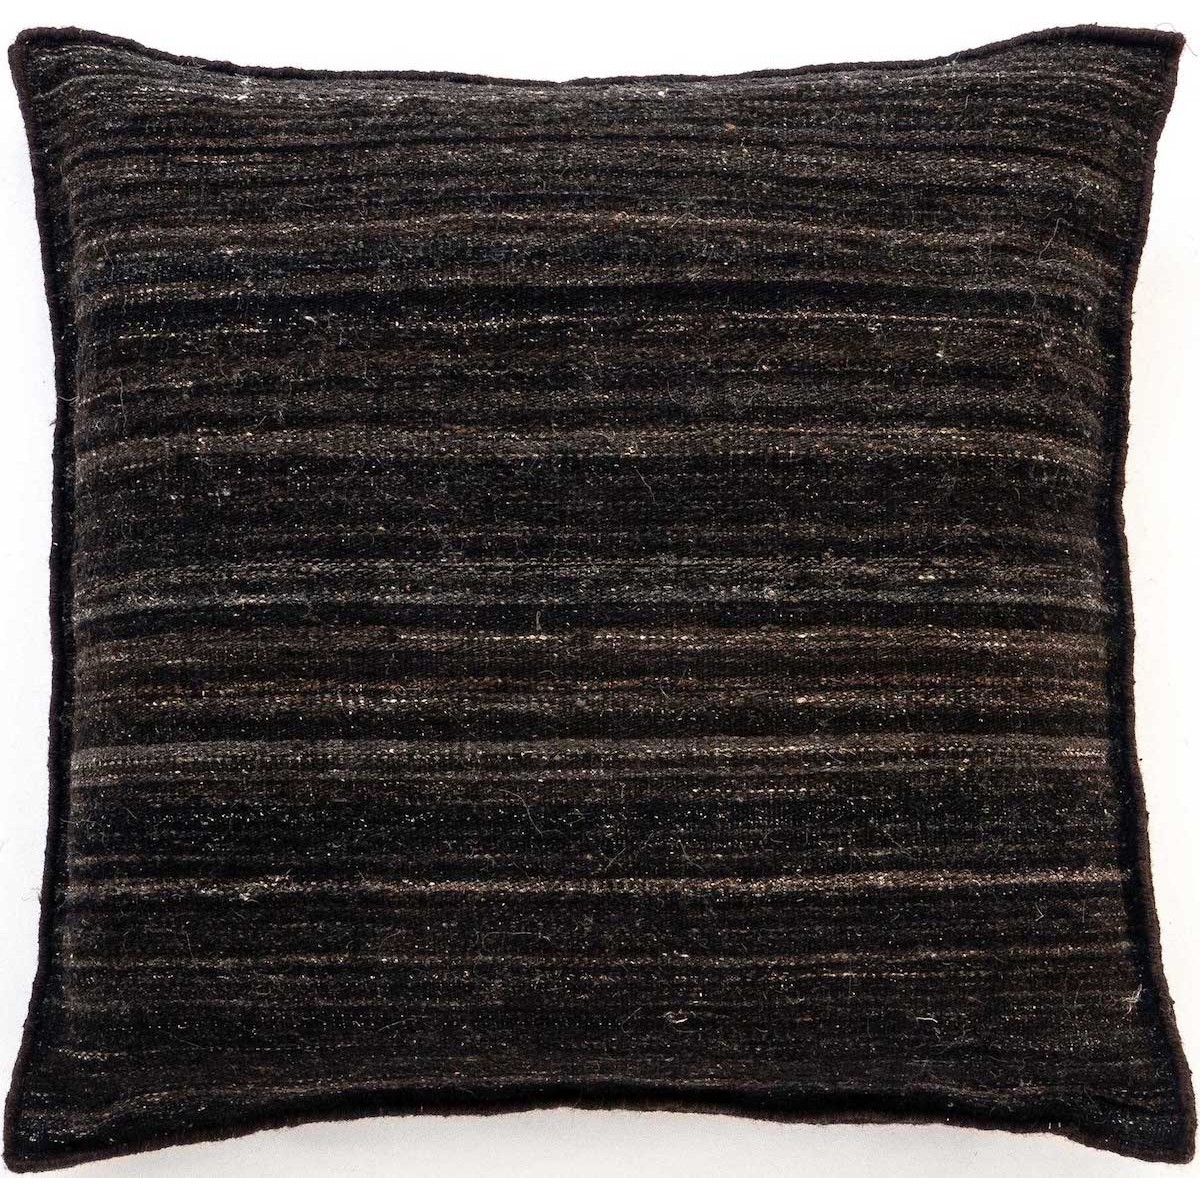 80x80cm - Wellbeing heavy kilim cushion